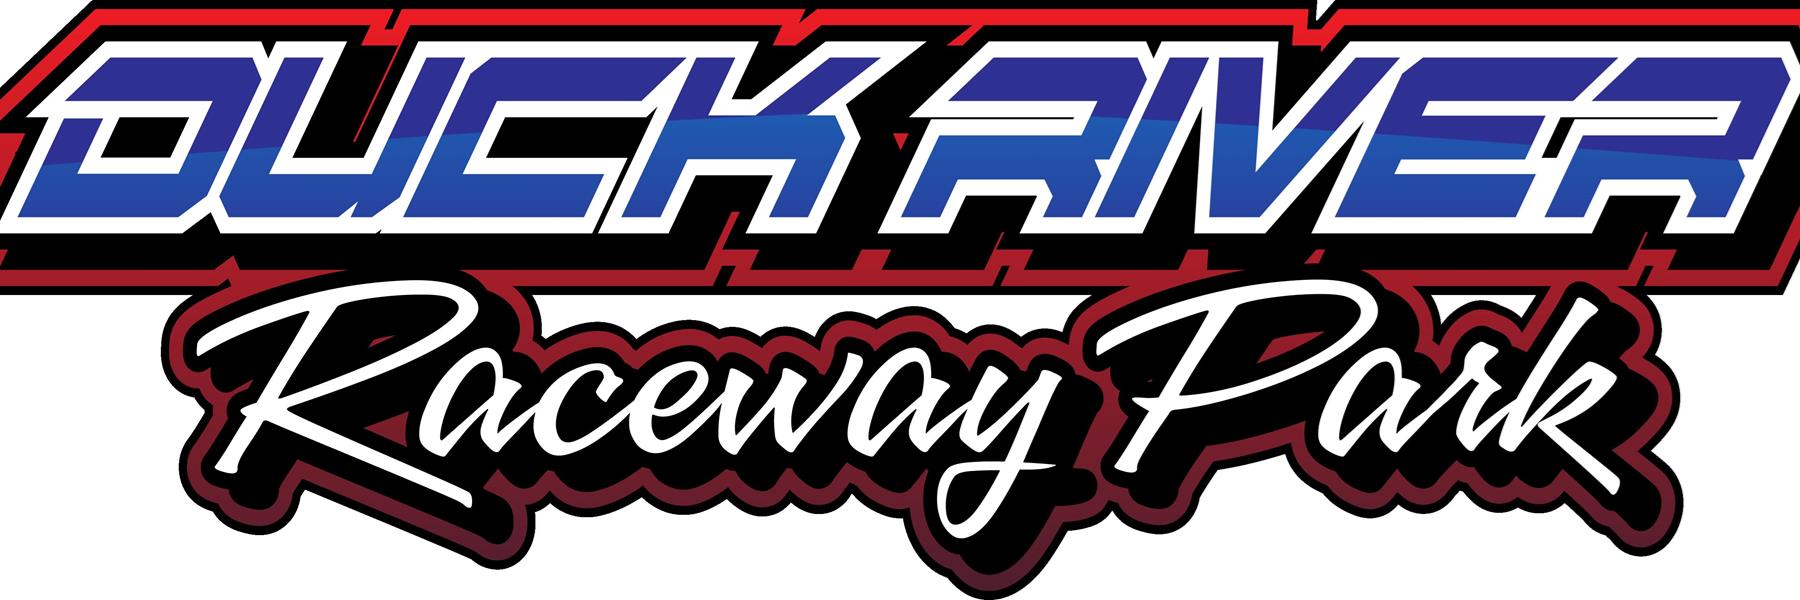 11/4/2022 - Duck River Raceway Park